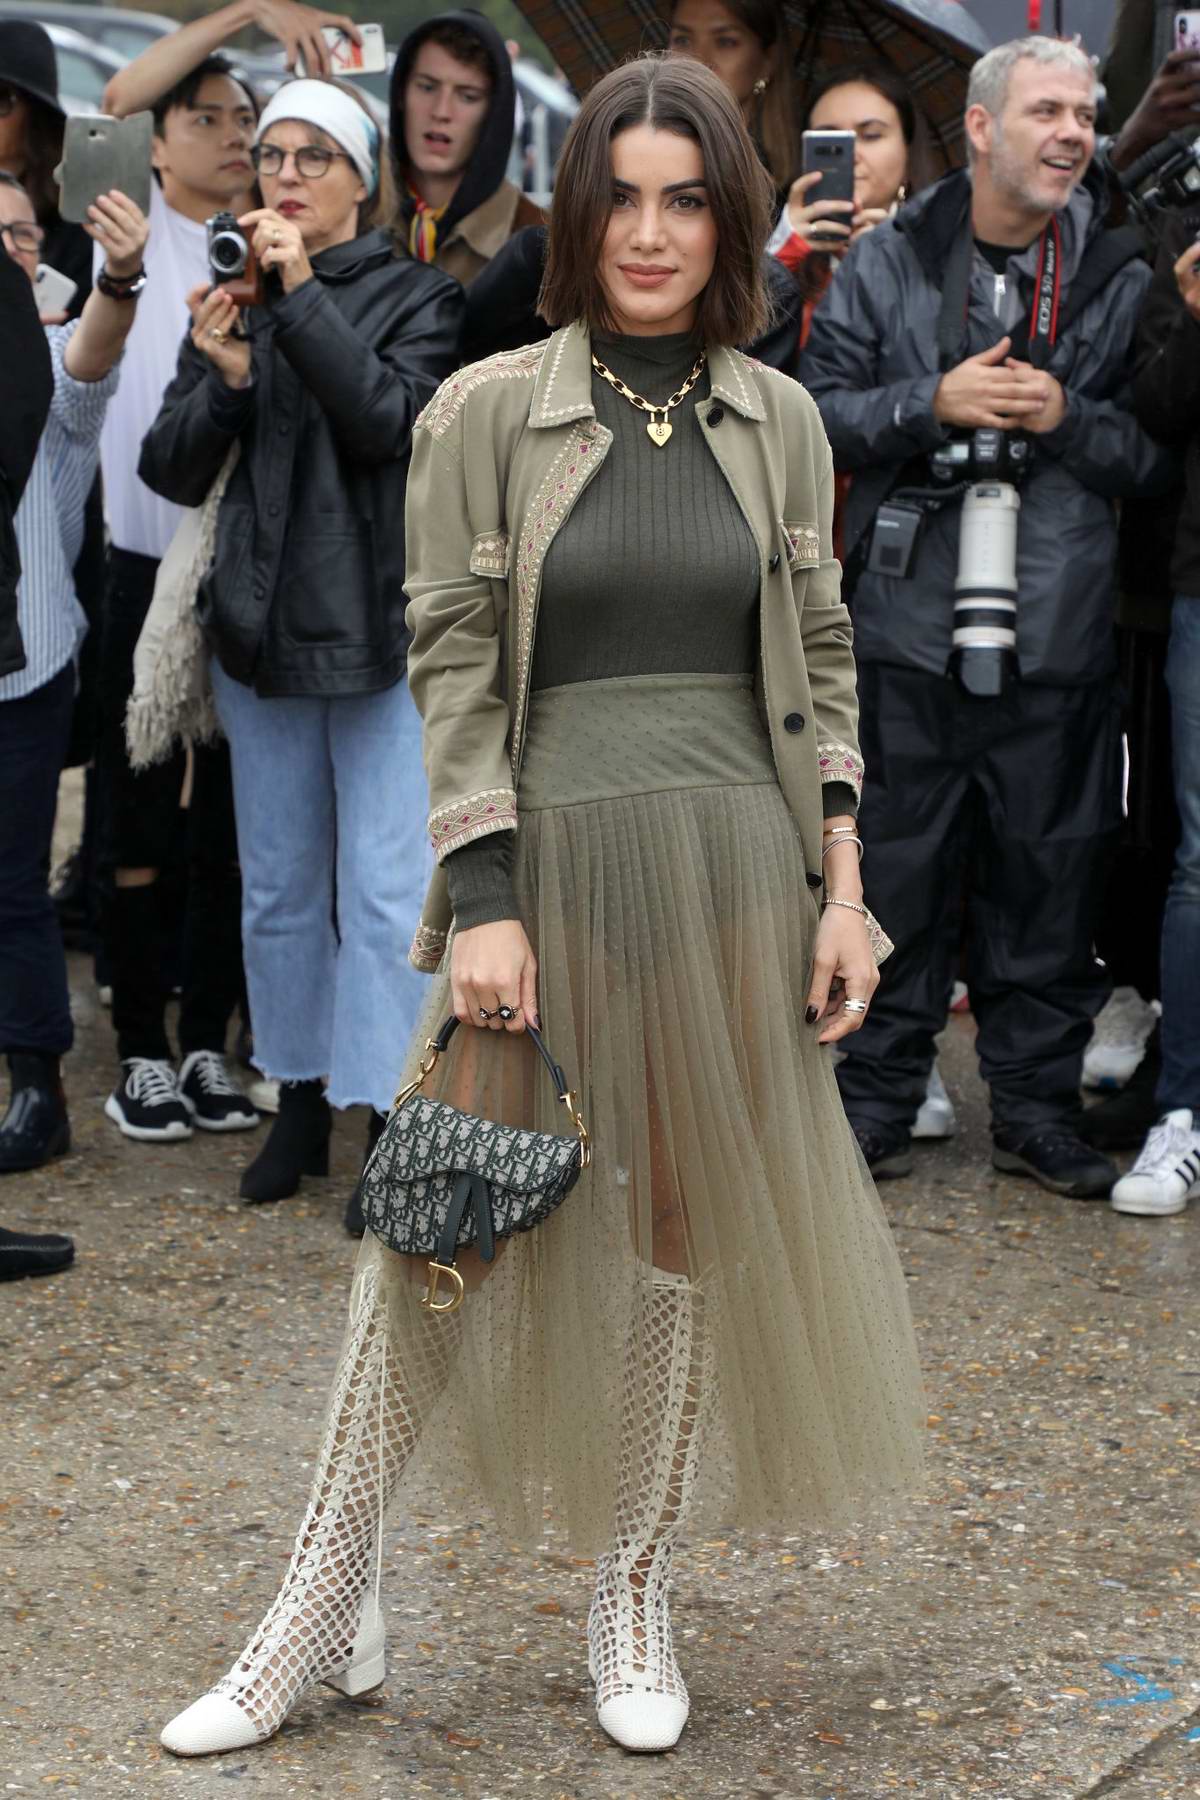 Camila Coelho attends the Christian Dior Show during Paris Fashion